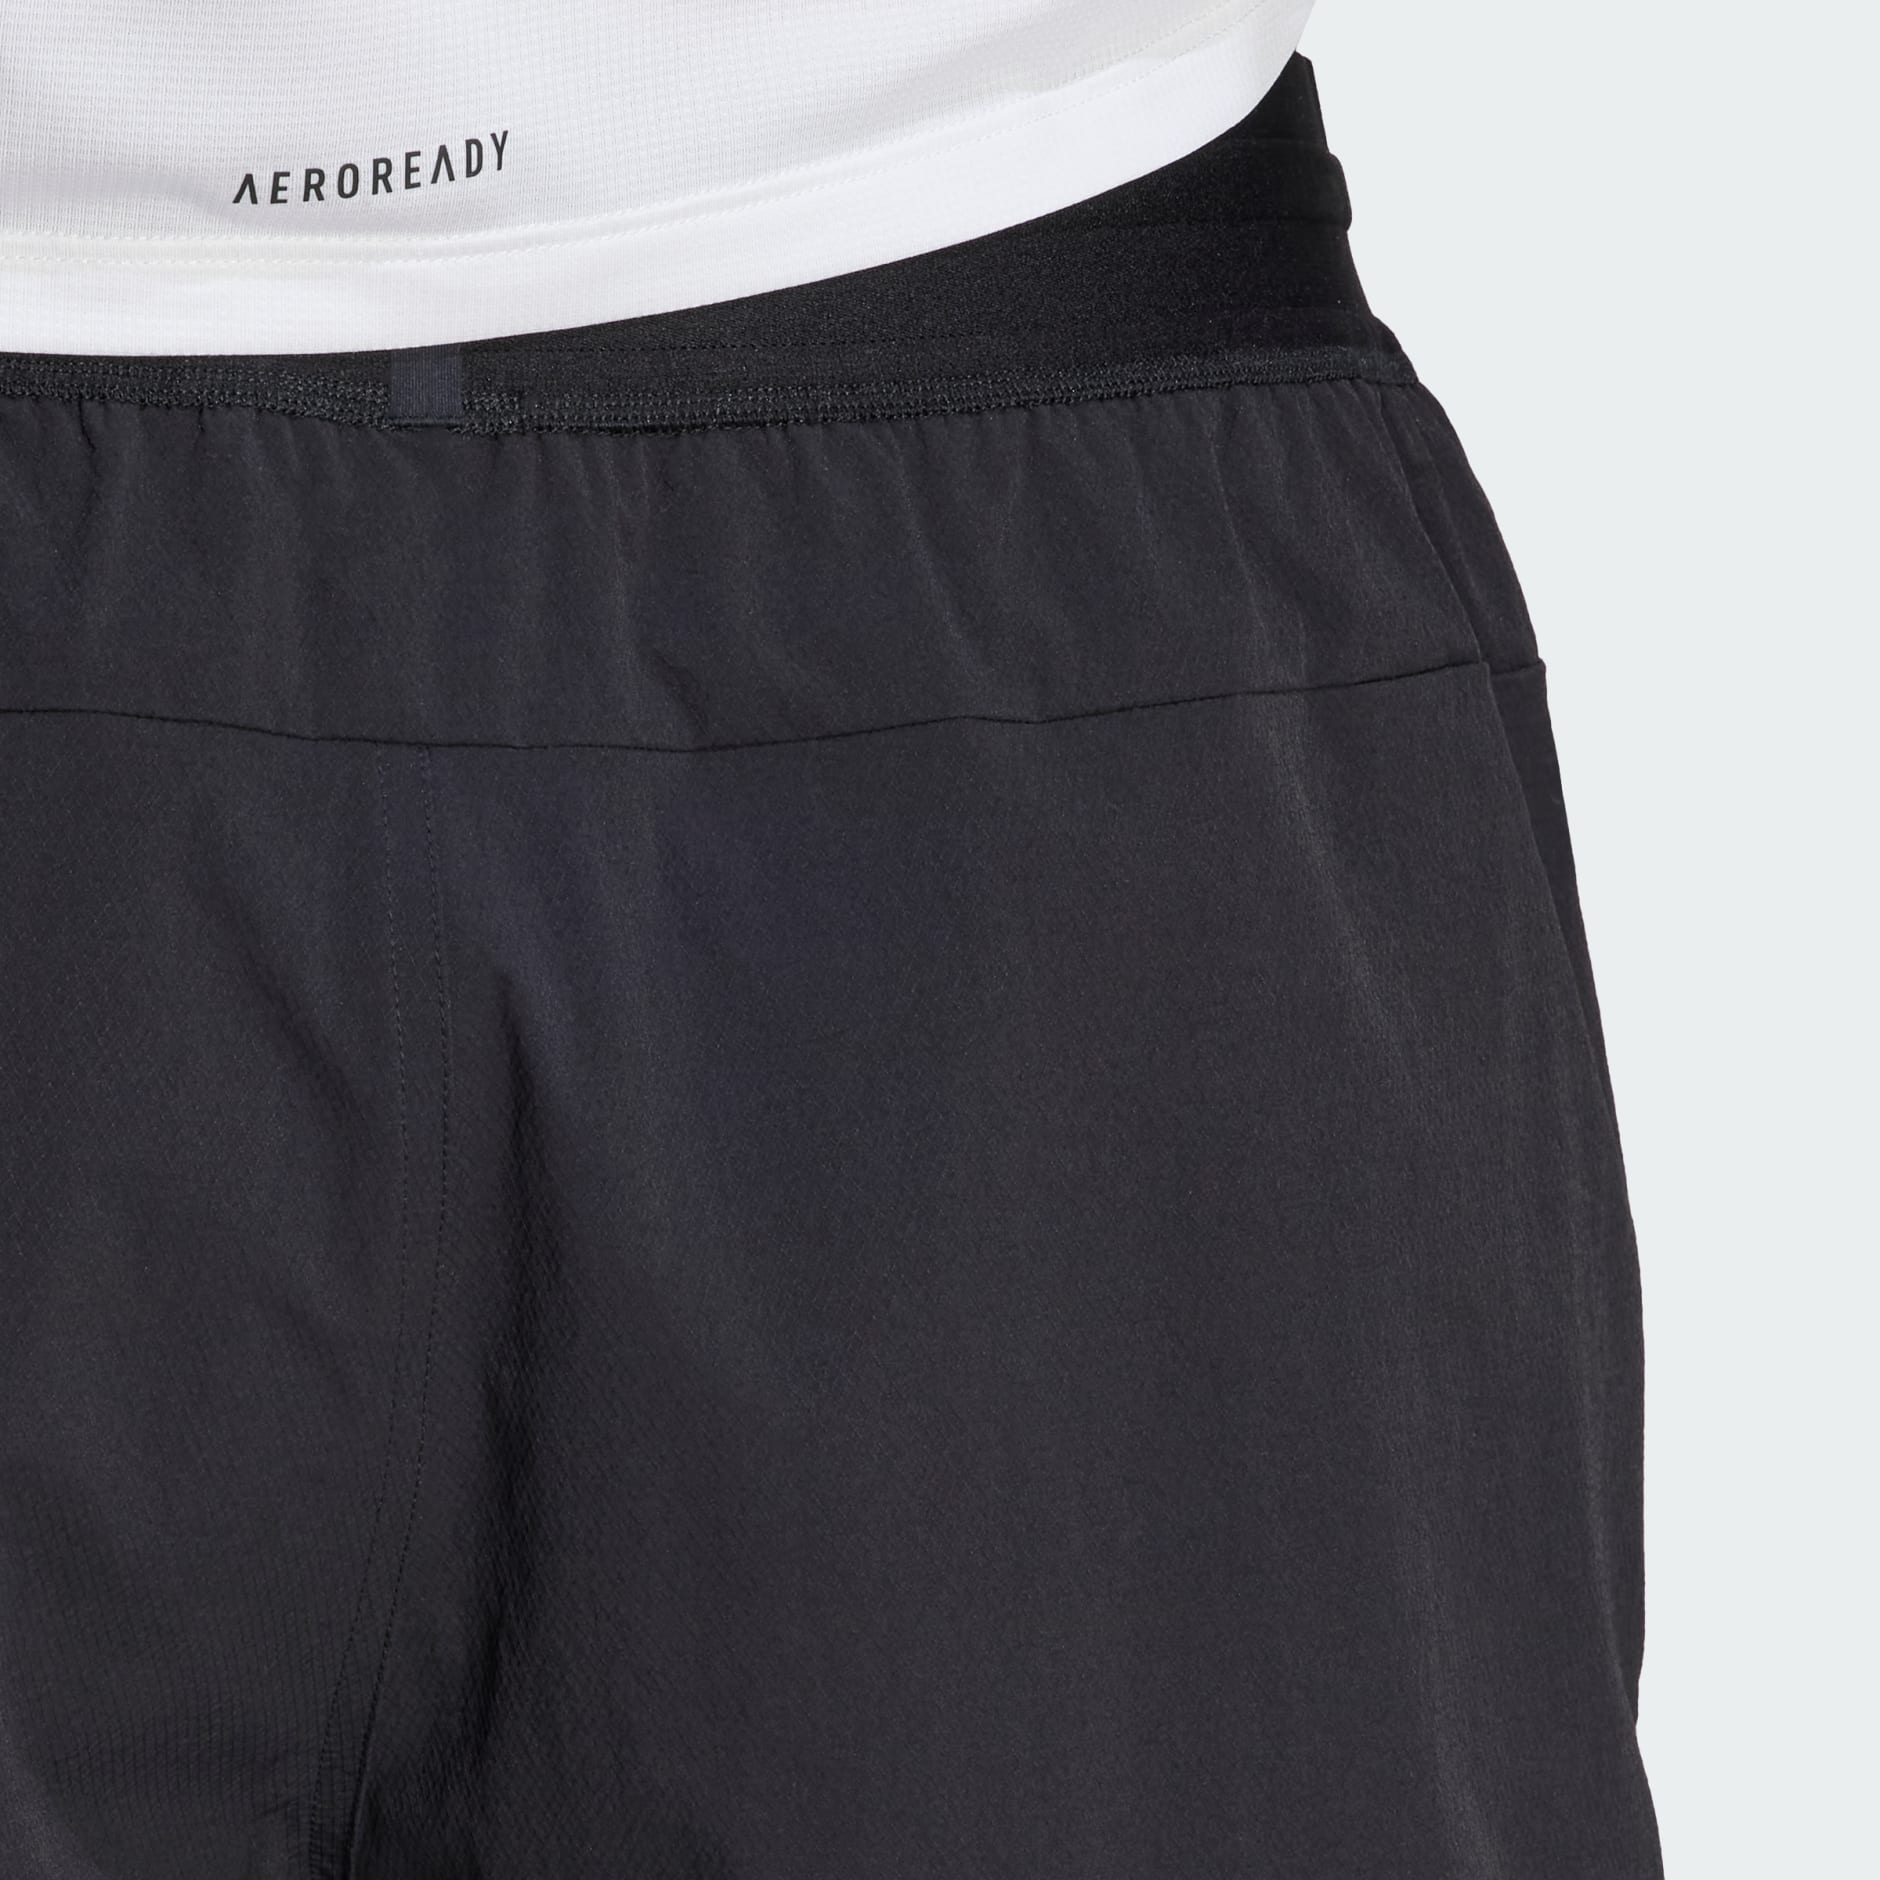 Clothing - Designed 4 Training CORDURA Workout Shorts - Black | adidas ...